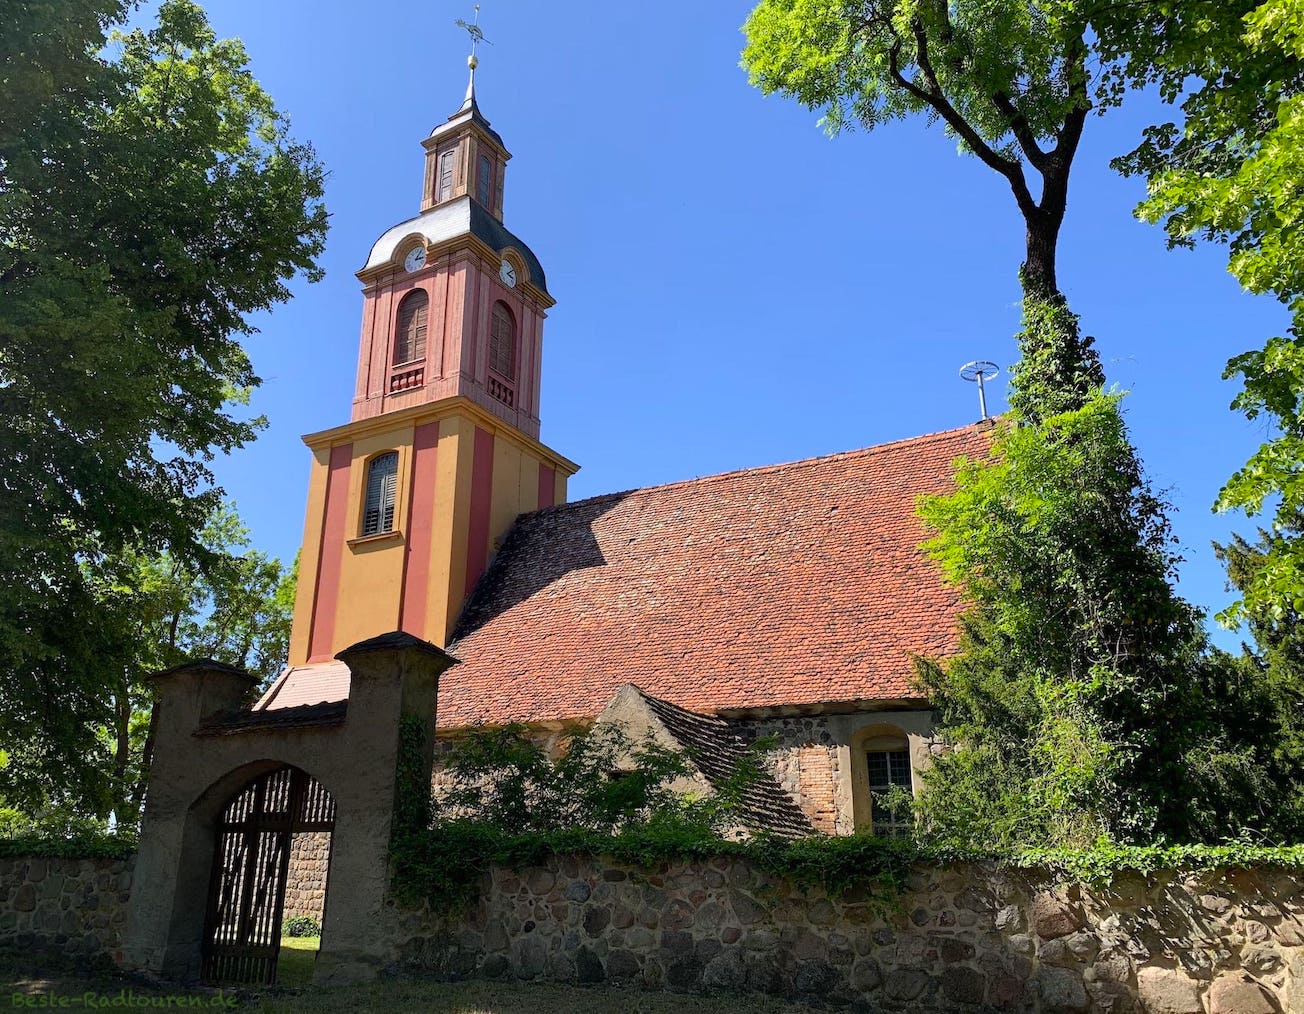 Foto von der Kranichradtour aus: Blumberg (Uckermark), Dorfkirche